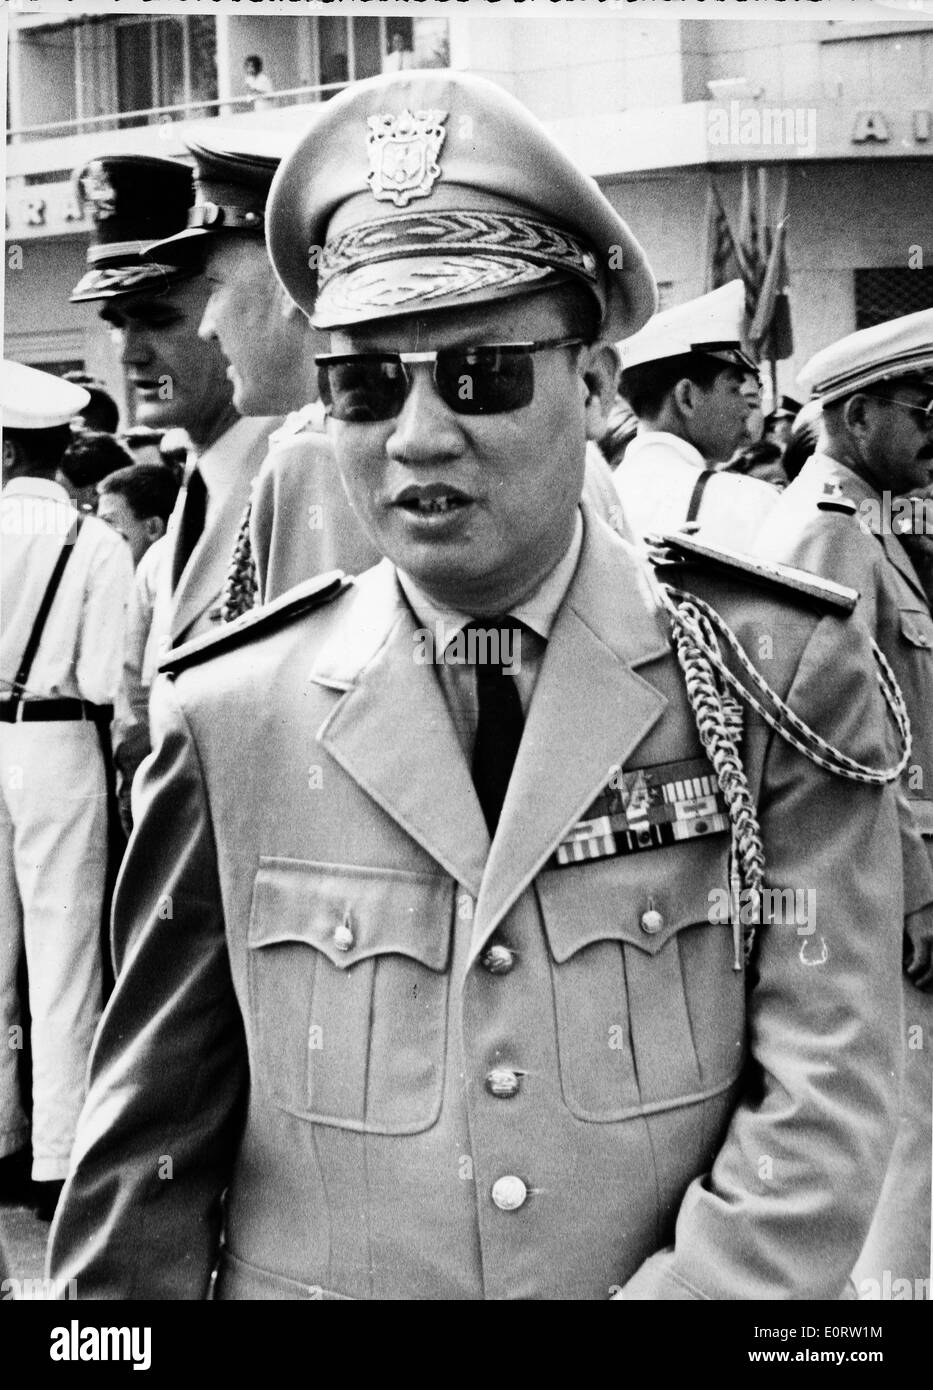 Premier ministre Pham Van Dong dans un uniforme militaire Banque D'Images